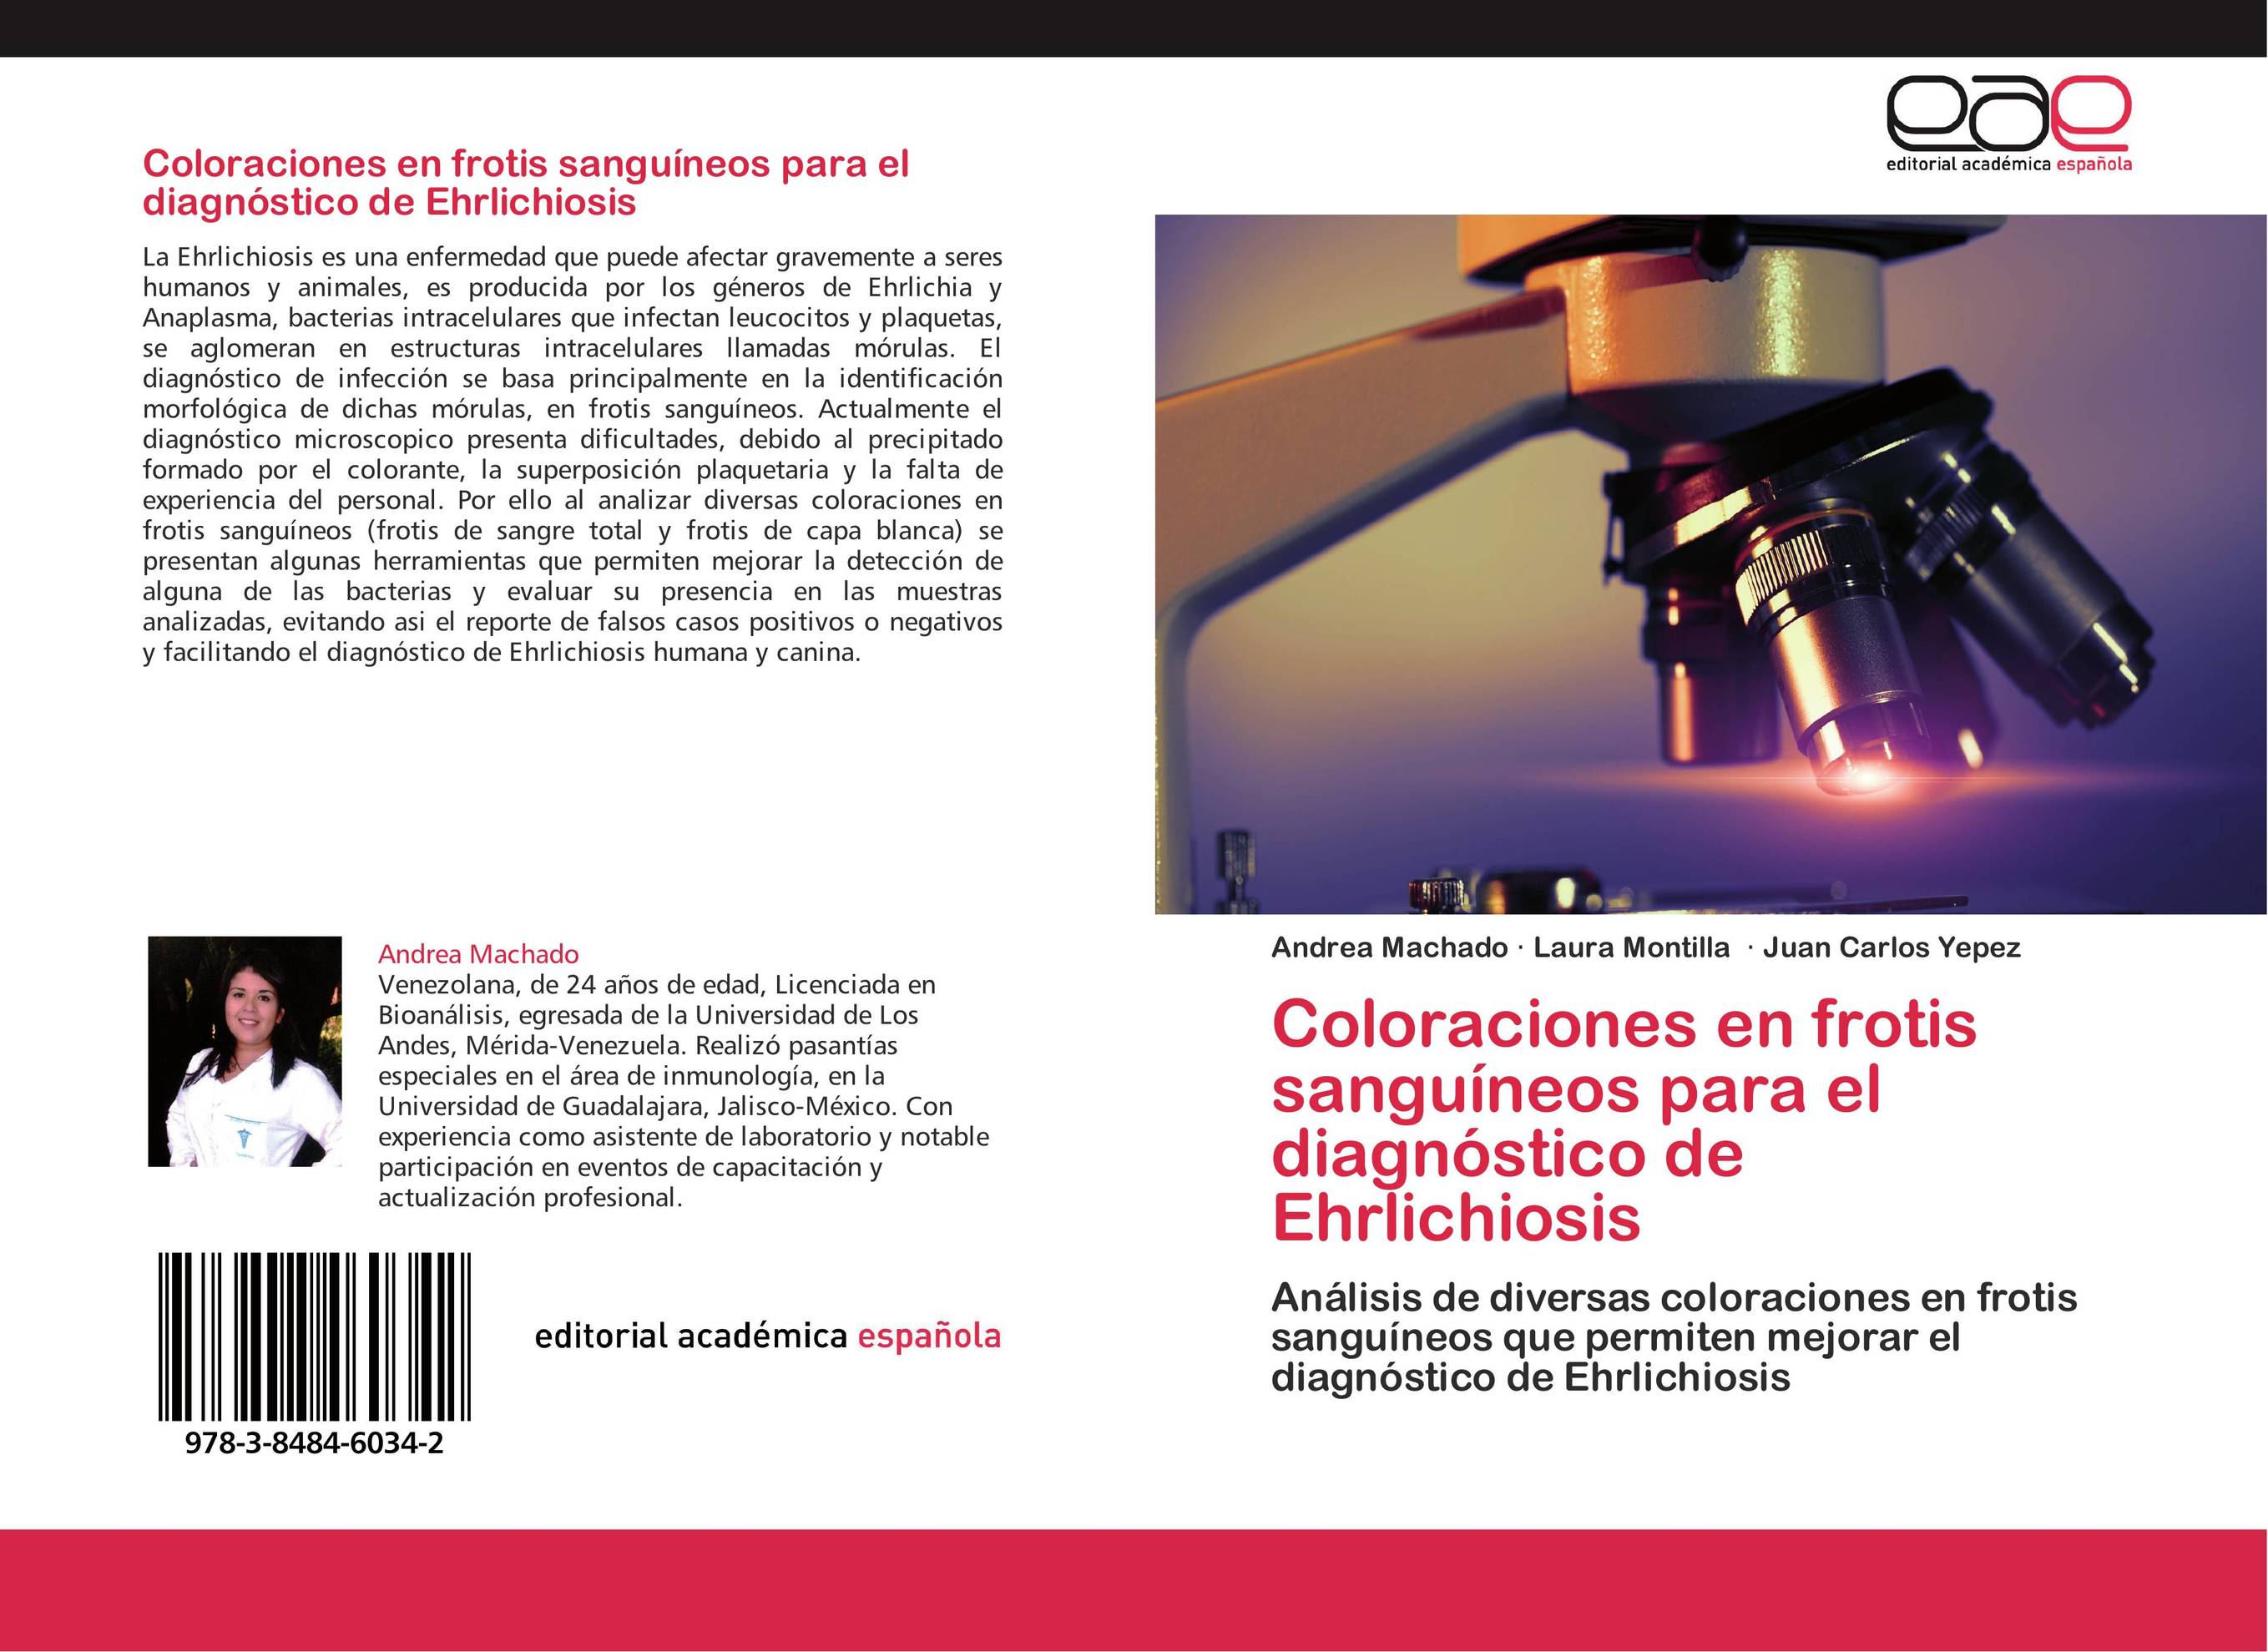 Coloraciones en frotis sanguíneos para el diagnóstico de Ehrlichiosis